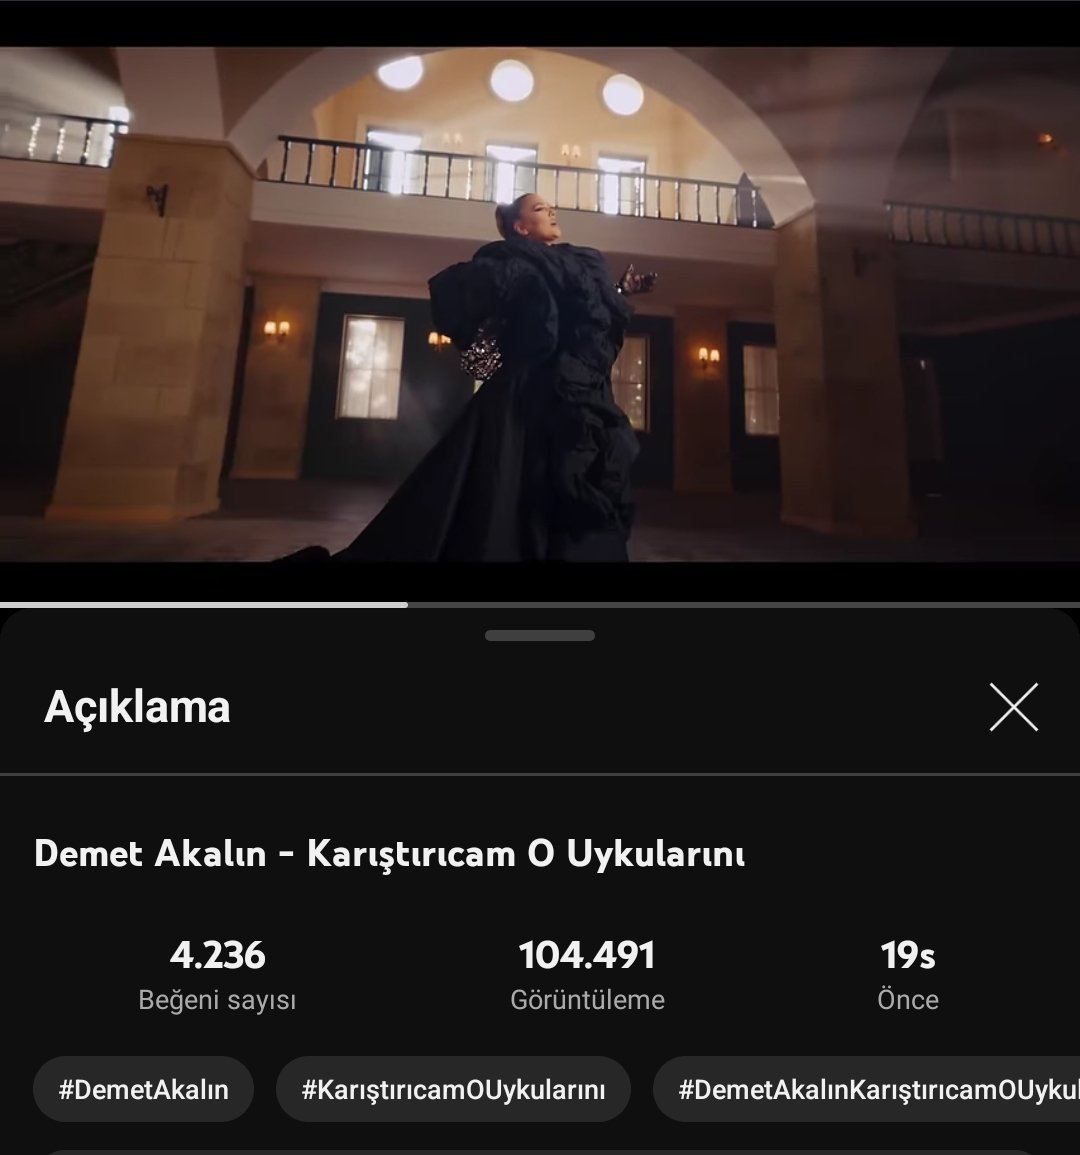 @DemetAkalin'ın yeni albümü olan #D-Pop'un ilk teklisi #KarıştırıcamOUykularını 19 saate 100.000 ( yüz bin ) dinlenmeyi geçti.